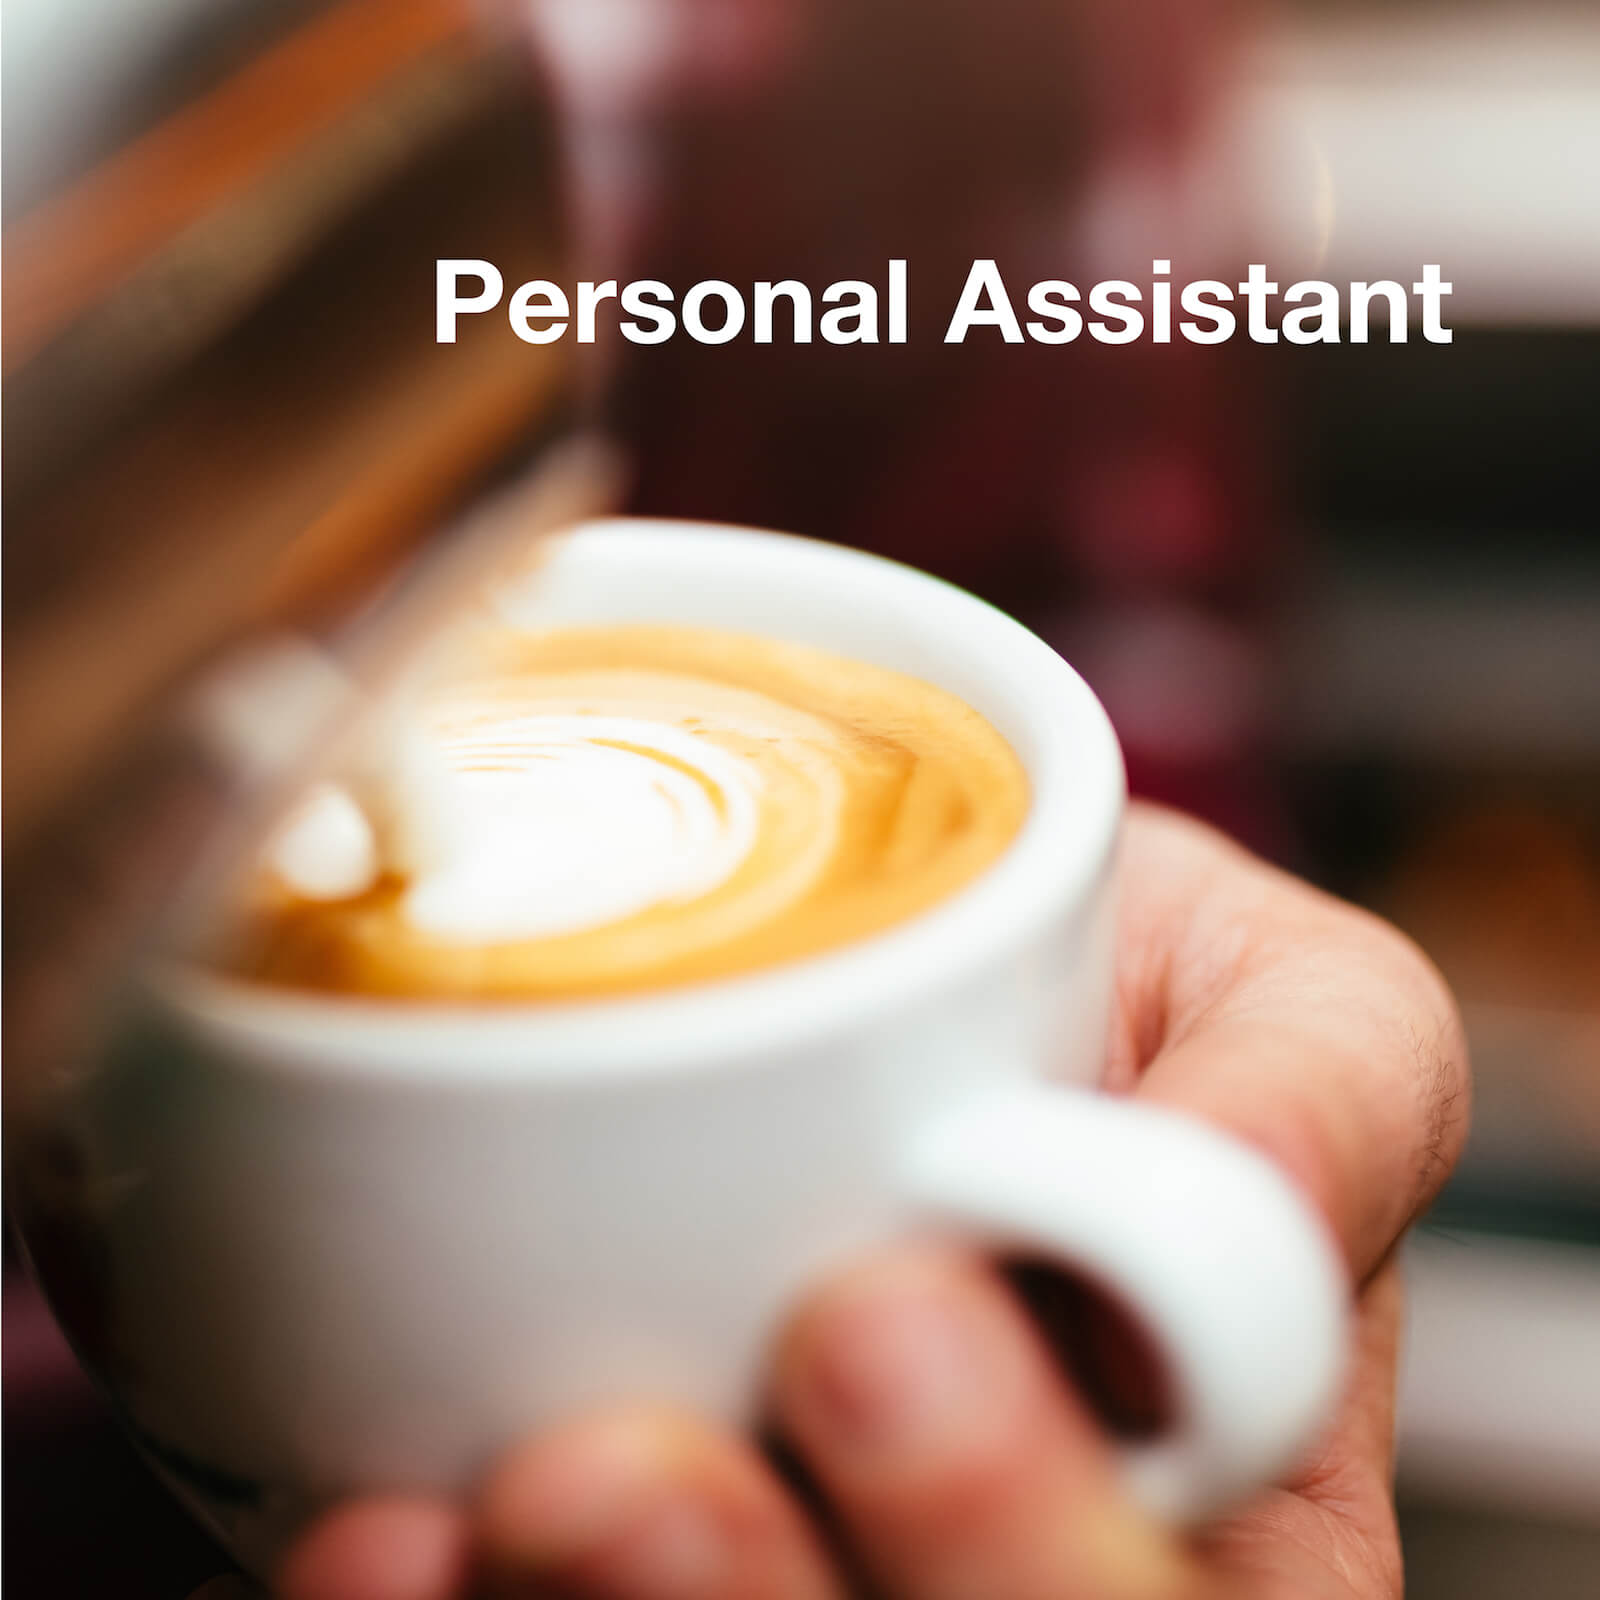 N4YK – Agentur für Familienglück – Personal Assistant, persönliche Assistenz, PA für den gehobenen Privathaushalt.